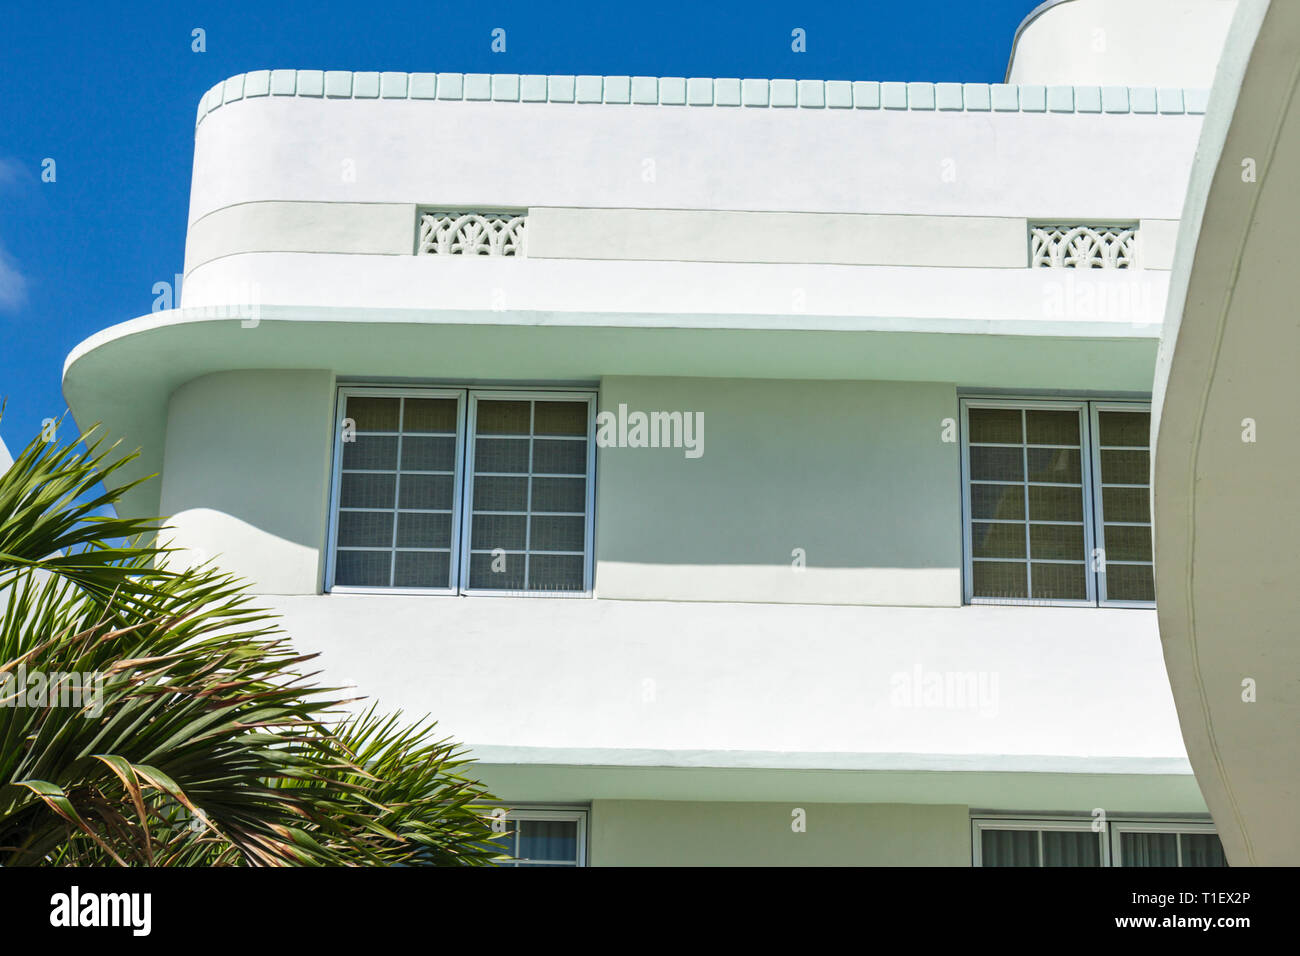 Miami Beach Florida, Ocean Drive, historisches Art déco-Viertel, The Carlyle, Hotel, 1939 Gebäude, außen, vorne, Eingang, Kiehnel, Elliot, Architektur Stockfoto